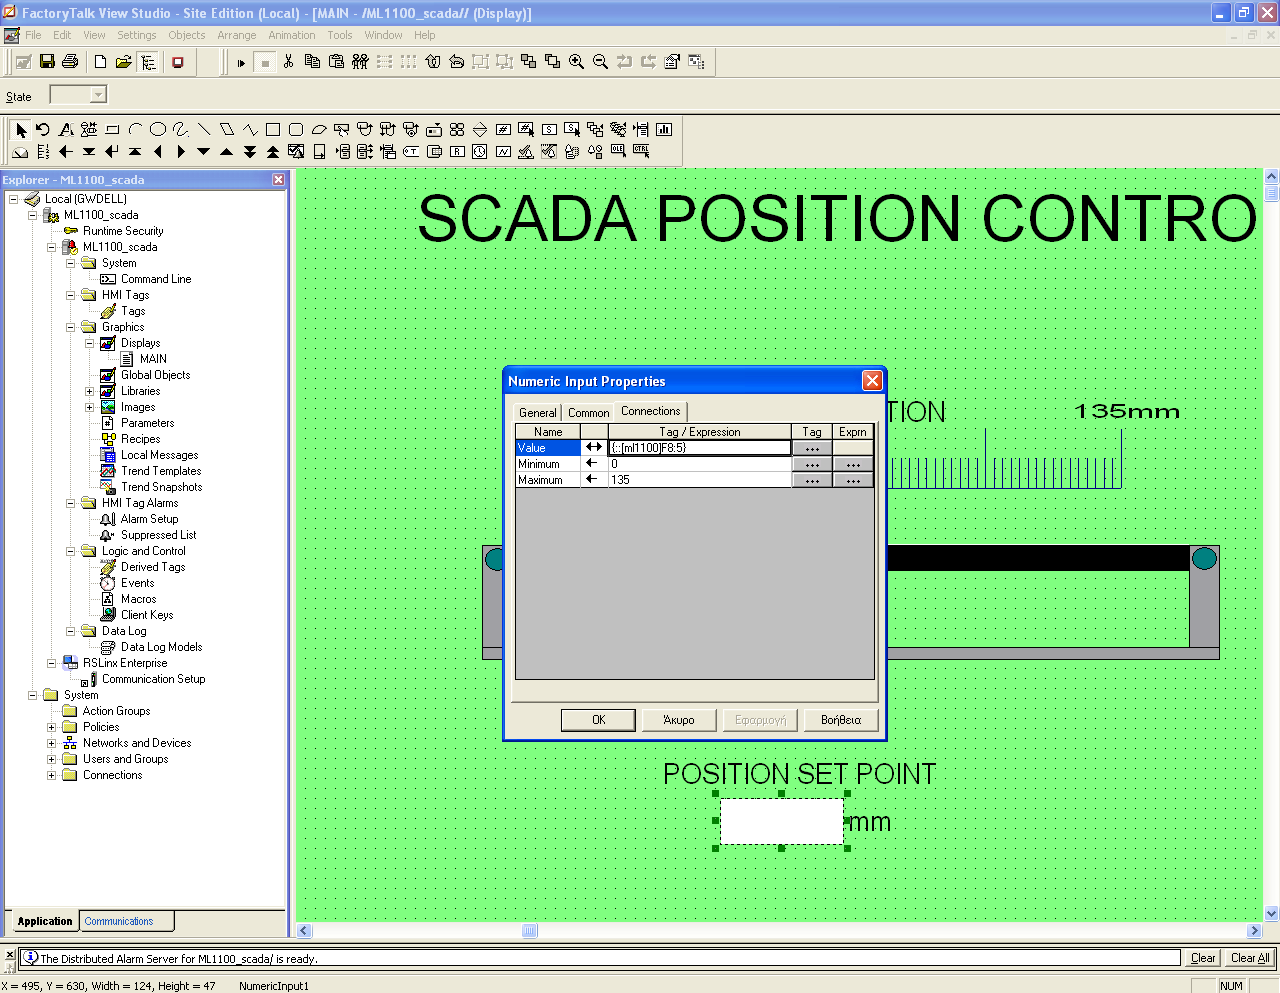 Κεφάλαιο 4ο: Περιγραφή της δικής μου εργασίας. 4.1: Σχεδίαση του συστήματος SCADA. Για την γραφική απεικόνιση του συστήματος SCADA χρησιμοποιήσαμε την εφαρμογή FactoryTalk View Studio-Site Edition.